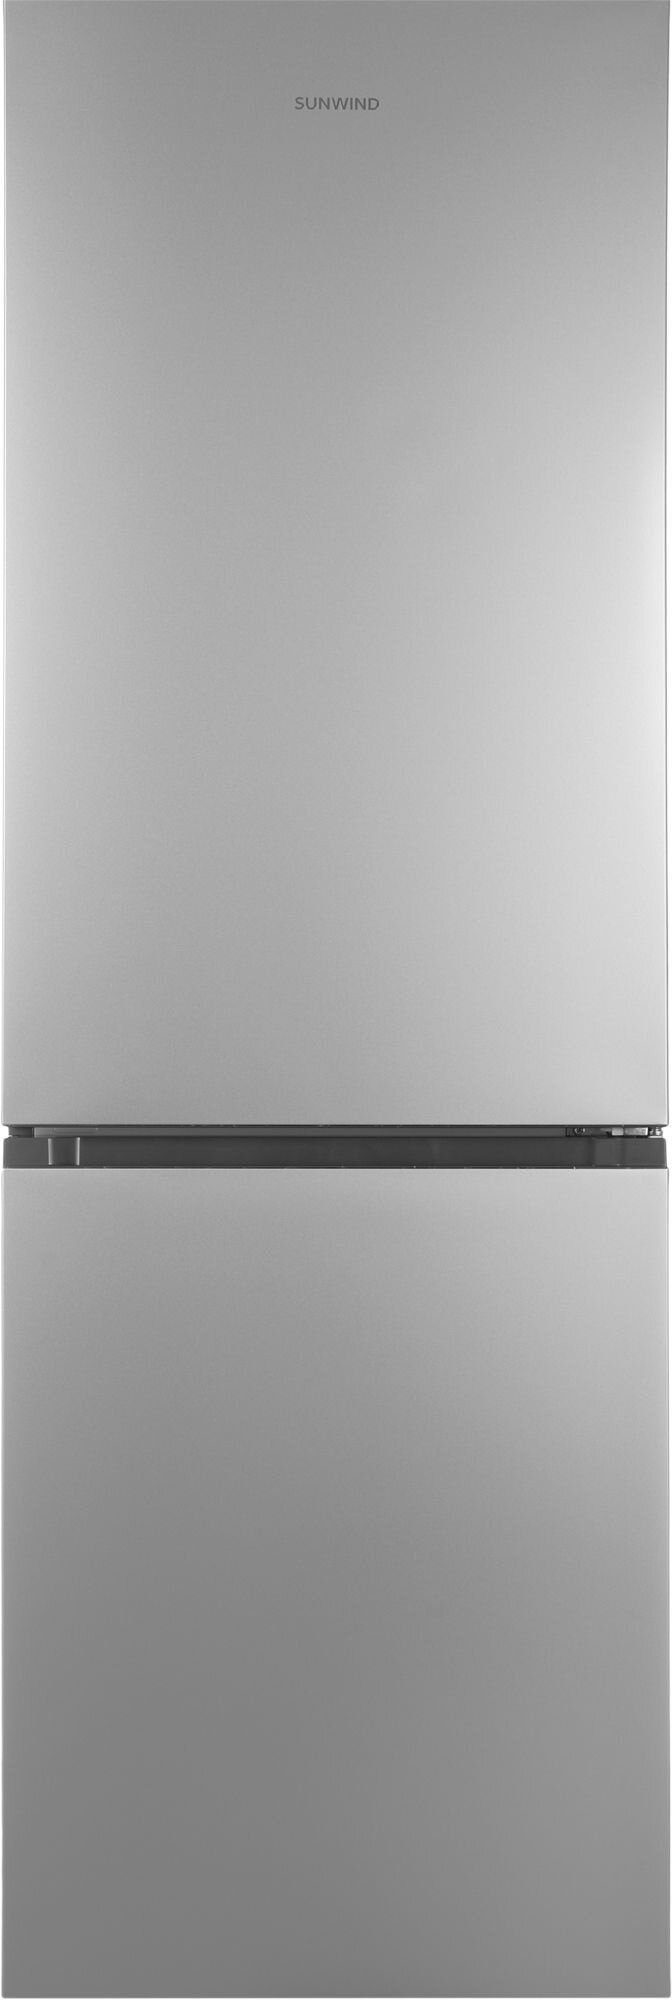 Холодильник SUNWIND SCC373 серебристый (FNF, 185 см)